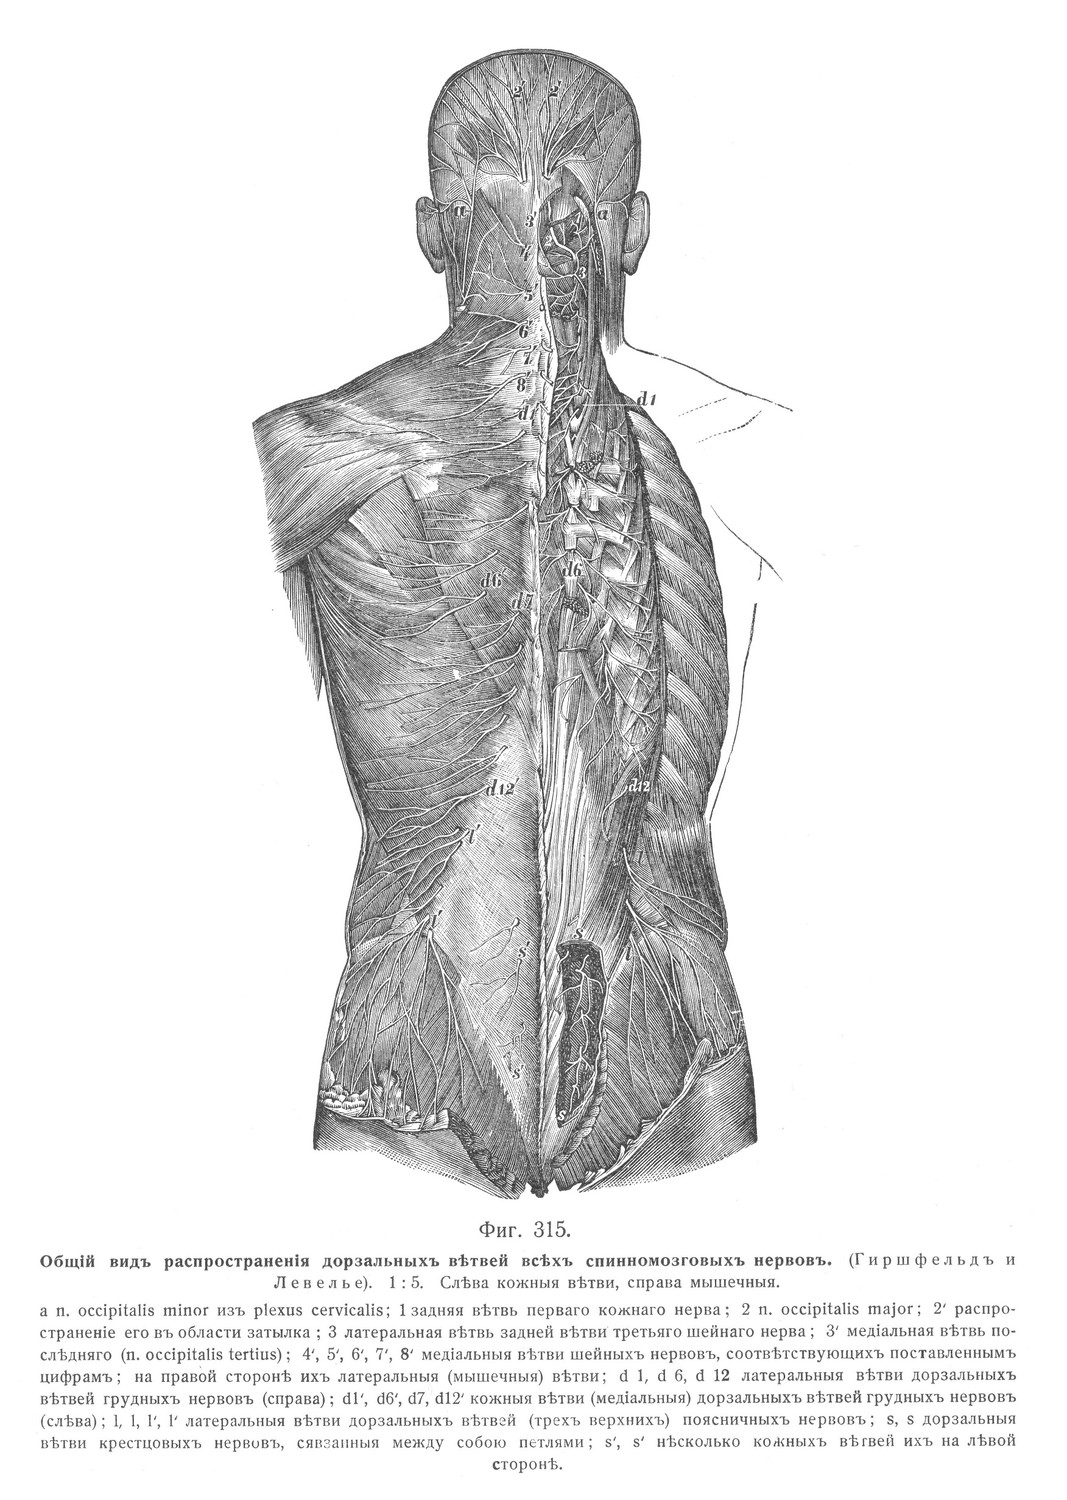 Общий вид распространения дорзальных ветвей всех спинномозговых нервов